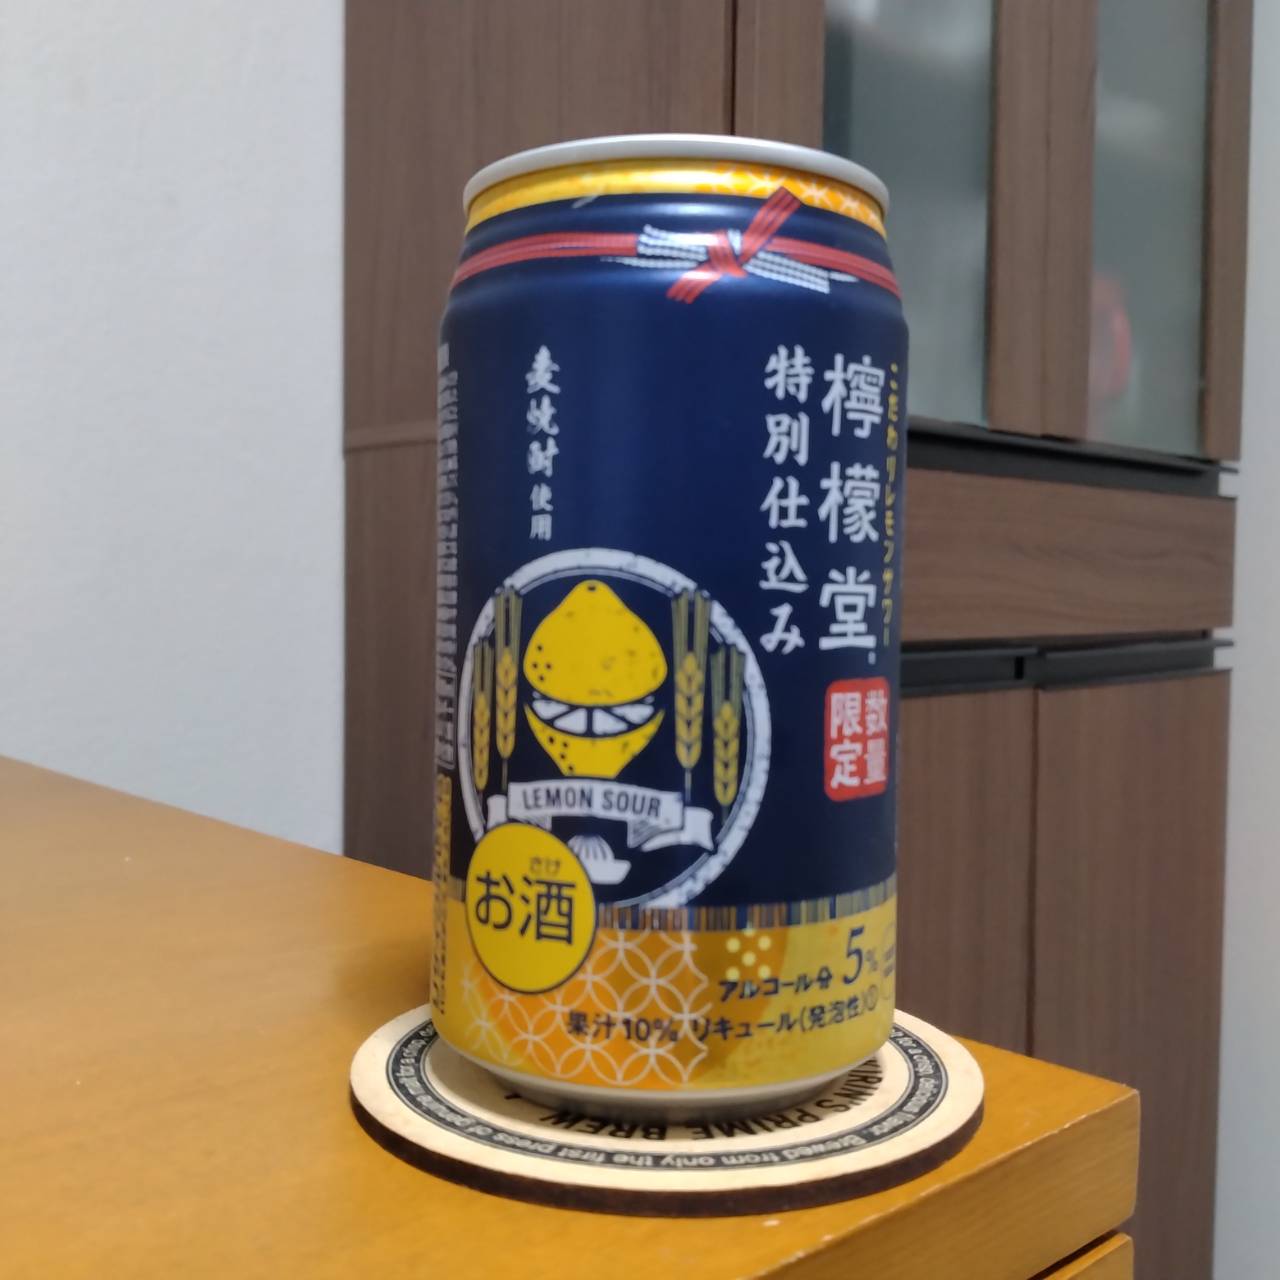 コカ・コーラ檸檬堂特別仕込み